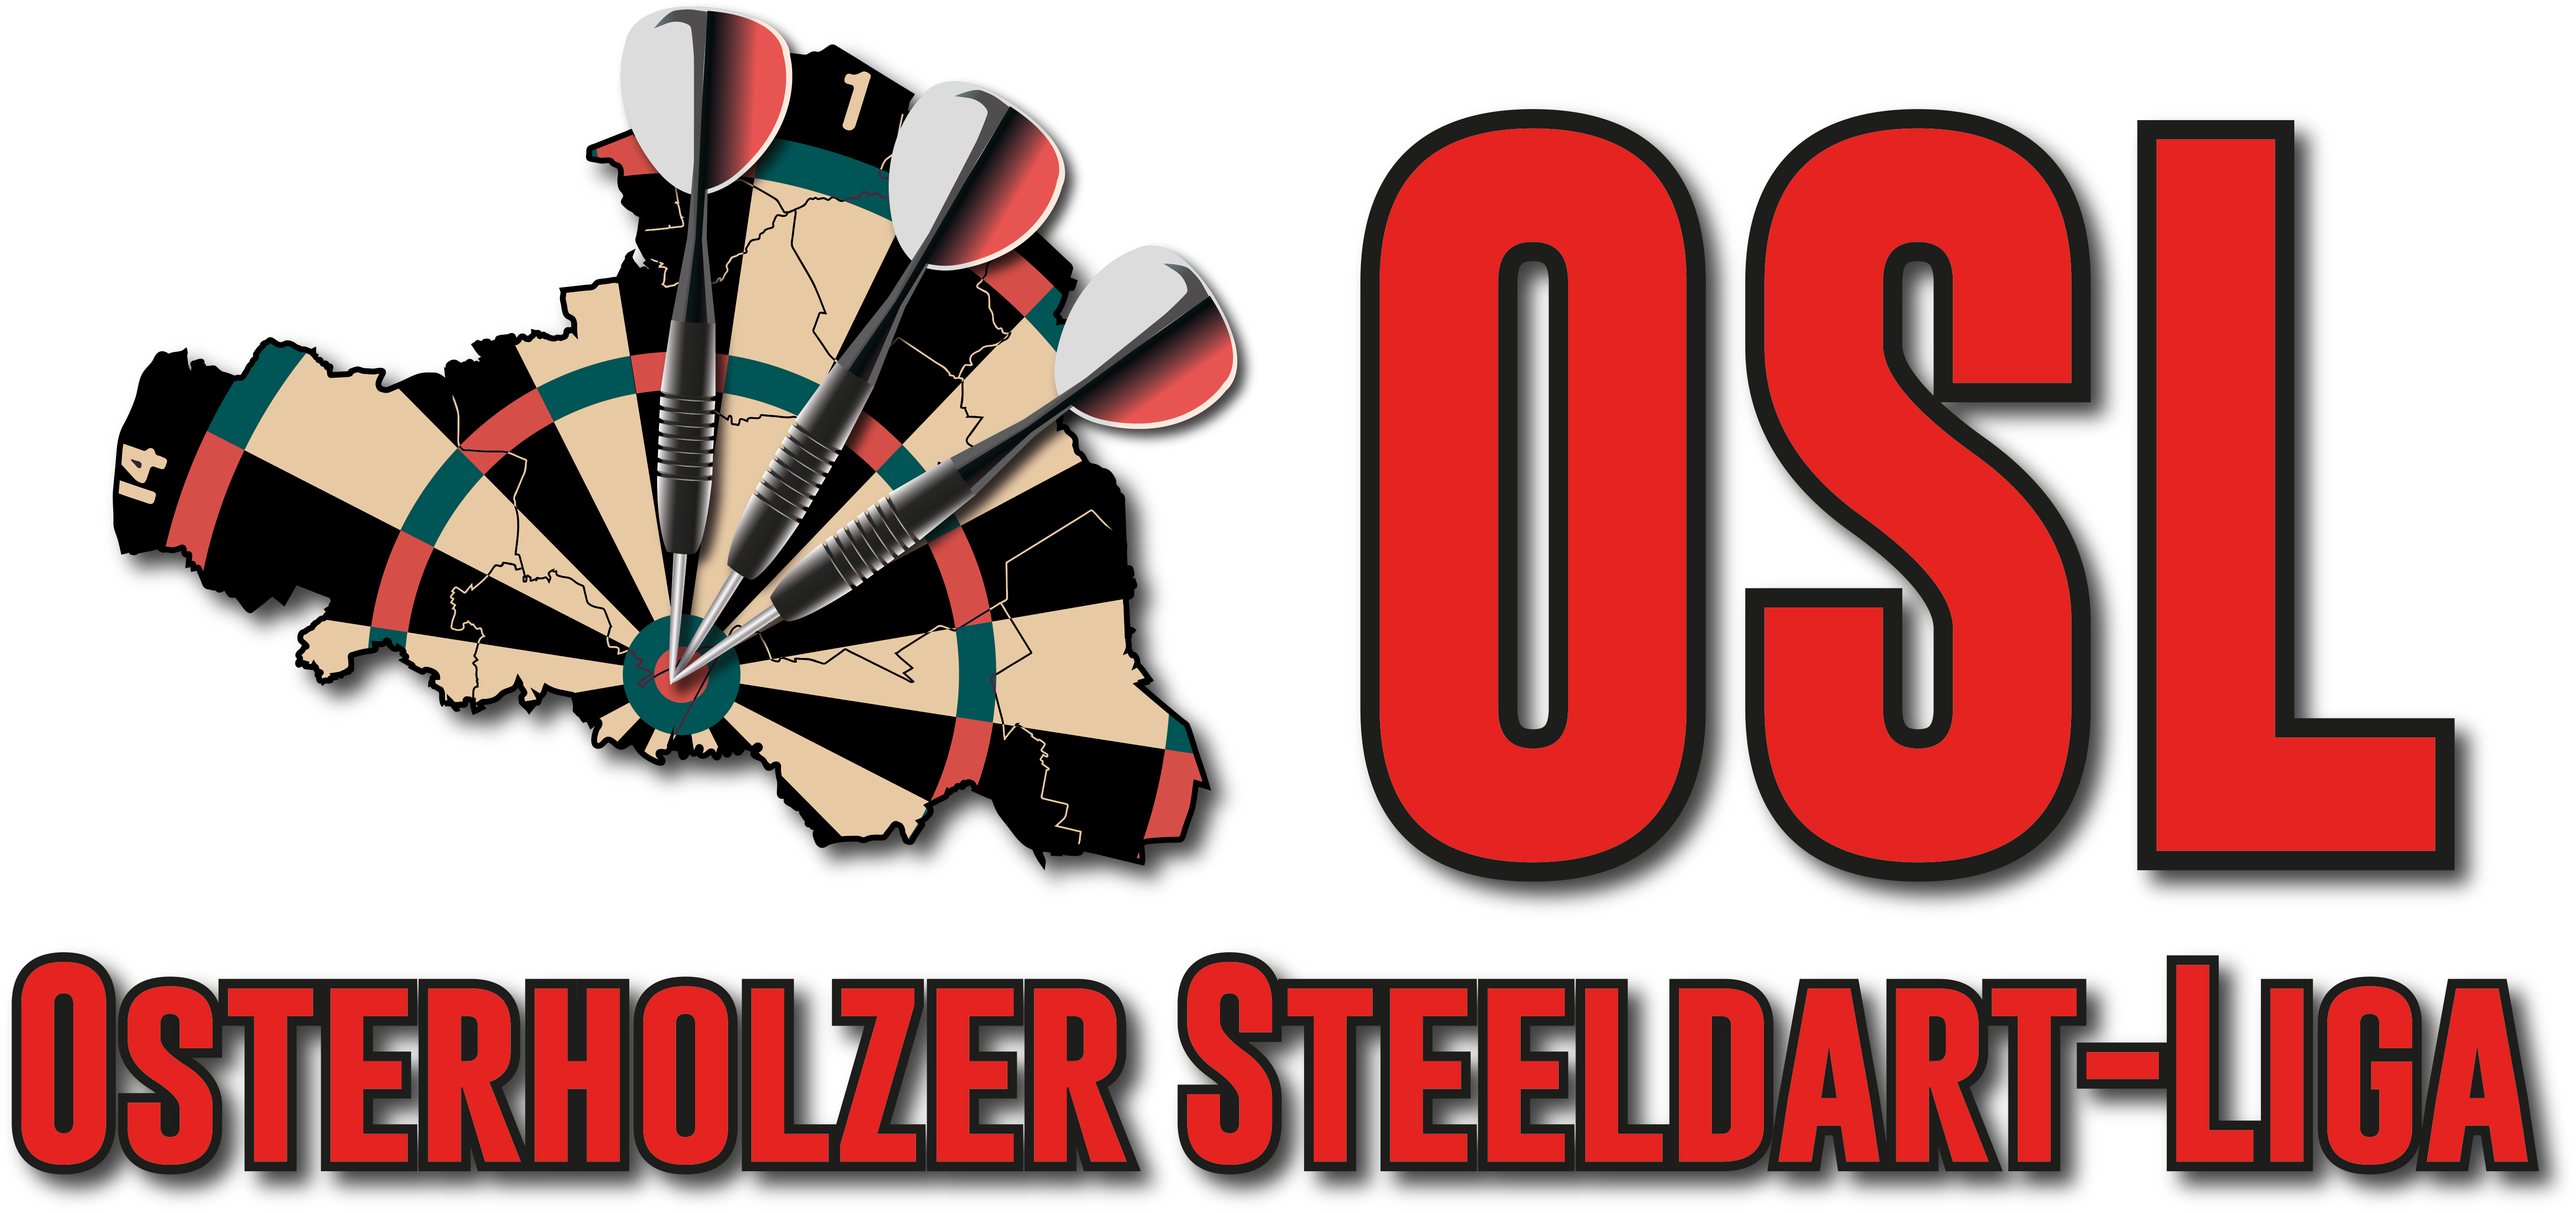 Osterholzer Steeldart-Liga – OSL